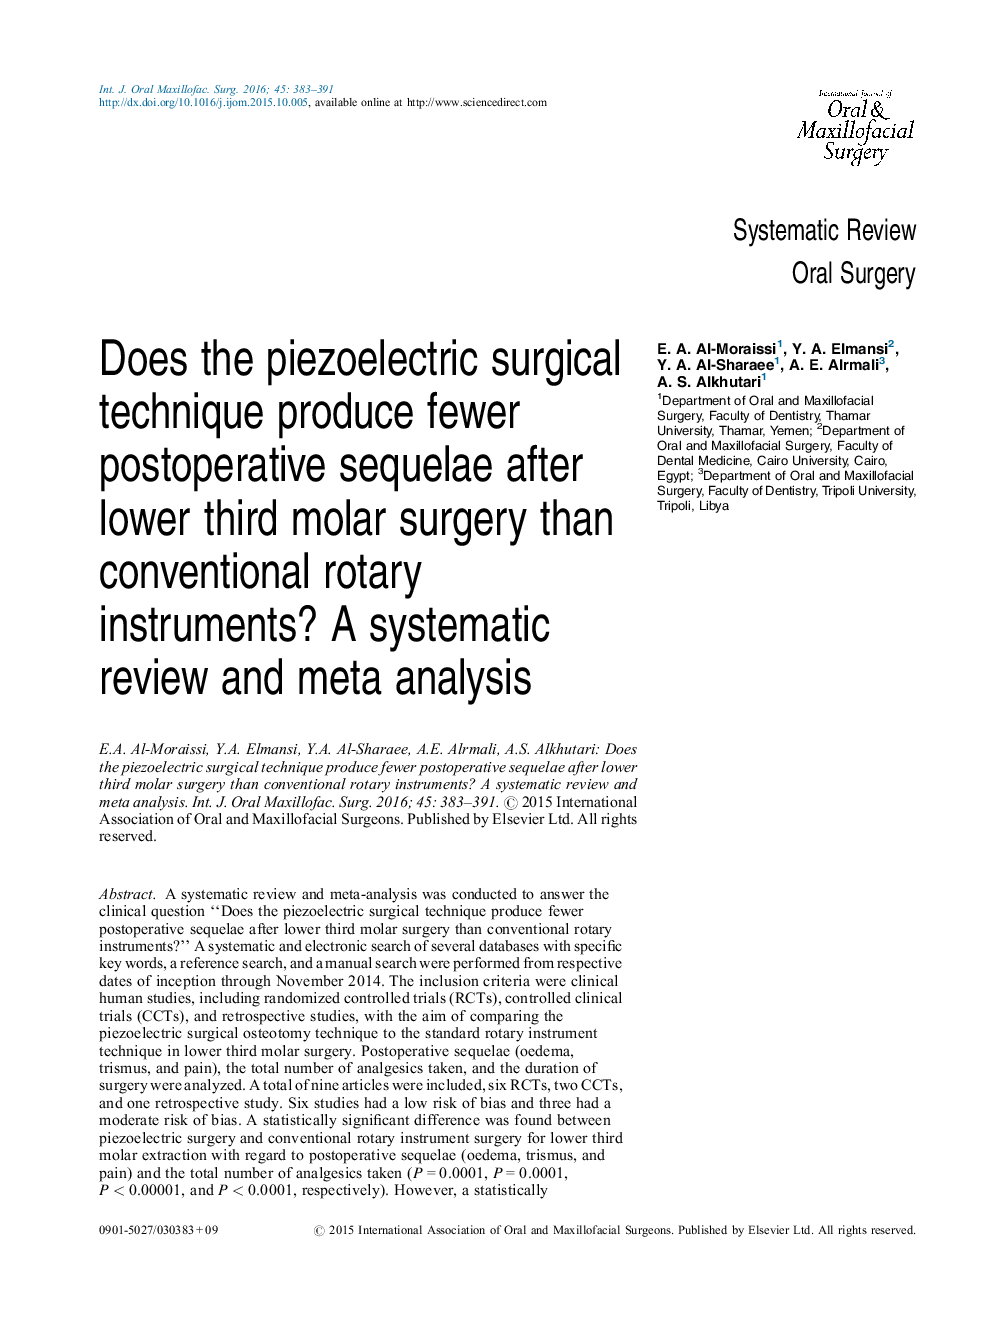 آیا تکنیک جراحی پیزوالکتریک پس از عمل جراحی کمتر از عمل جراحی پس از عمل کمتر از دستگاه های معمولی چرخش تولید می کند؟ بررسی منظم و متا تجزیه و تحلیل 